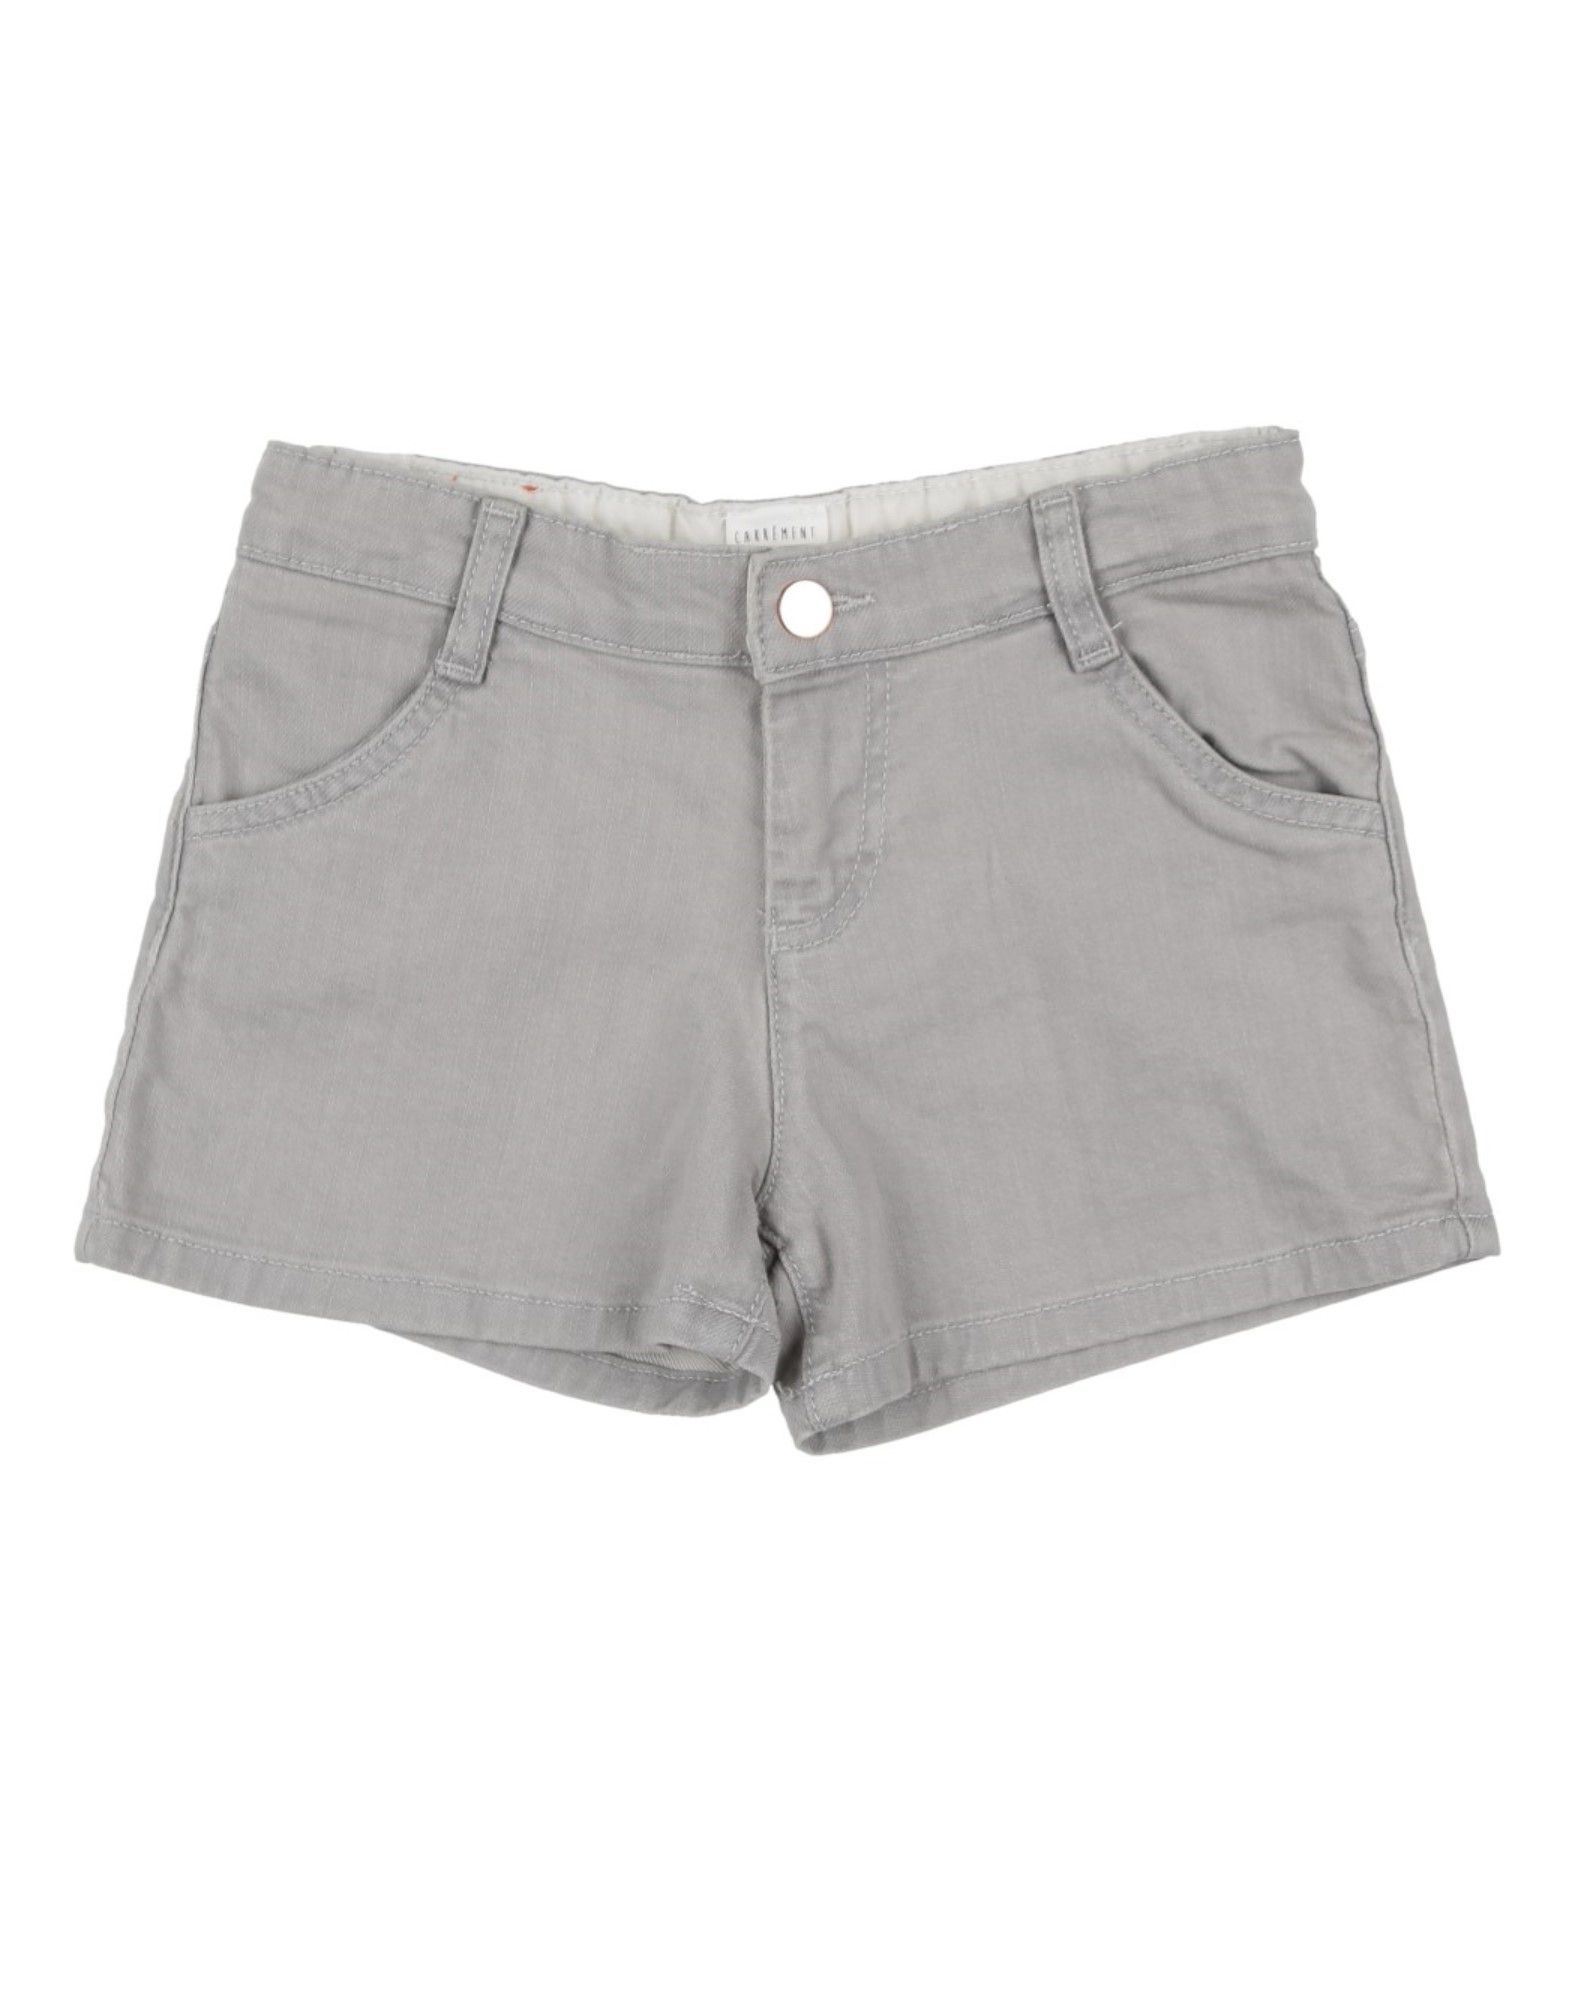 Shop Carrèment Beau Carrément Beau Toddler Girl Denim Shorts Grey Size 7 Cotton, Elastane